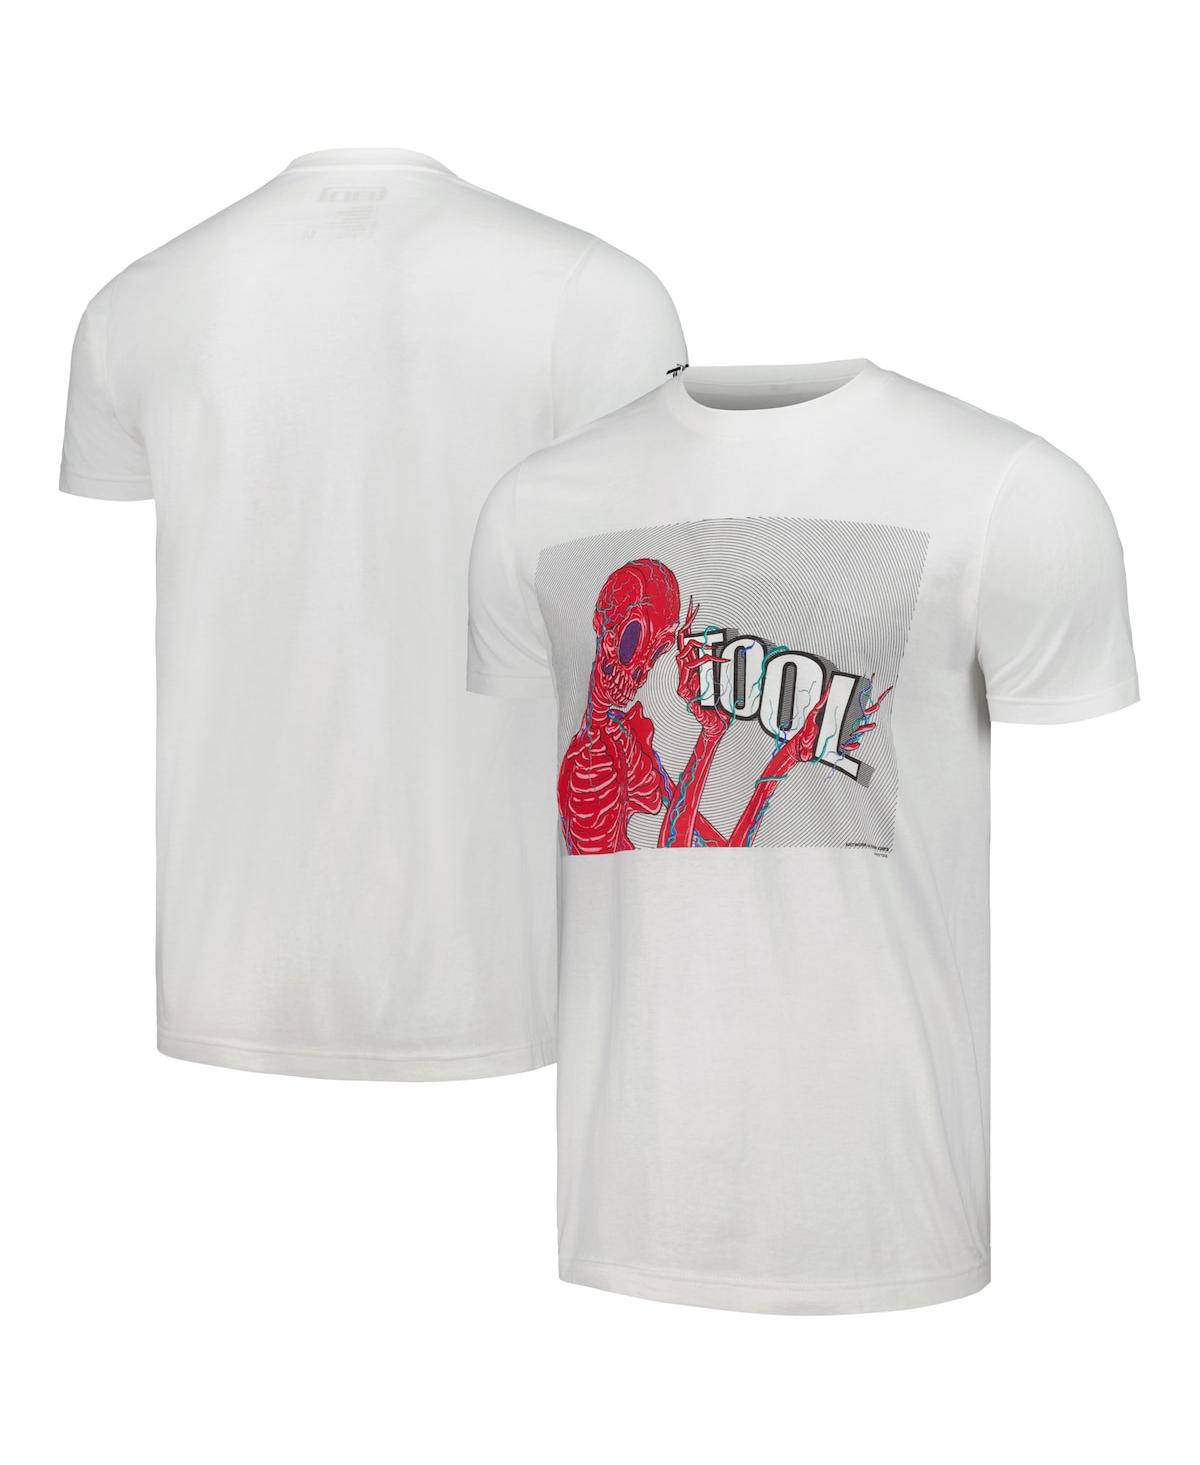 Men's and Women's White Tool Skeleton Holding Logo T-shirt - White